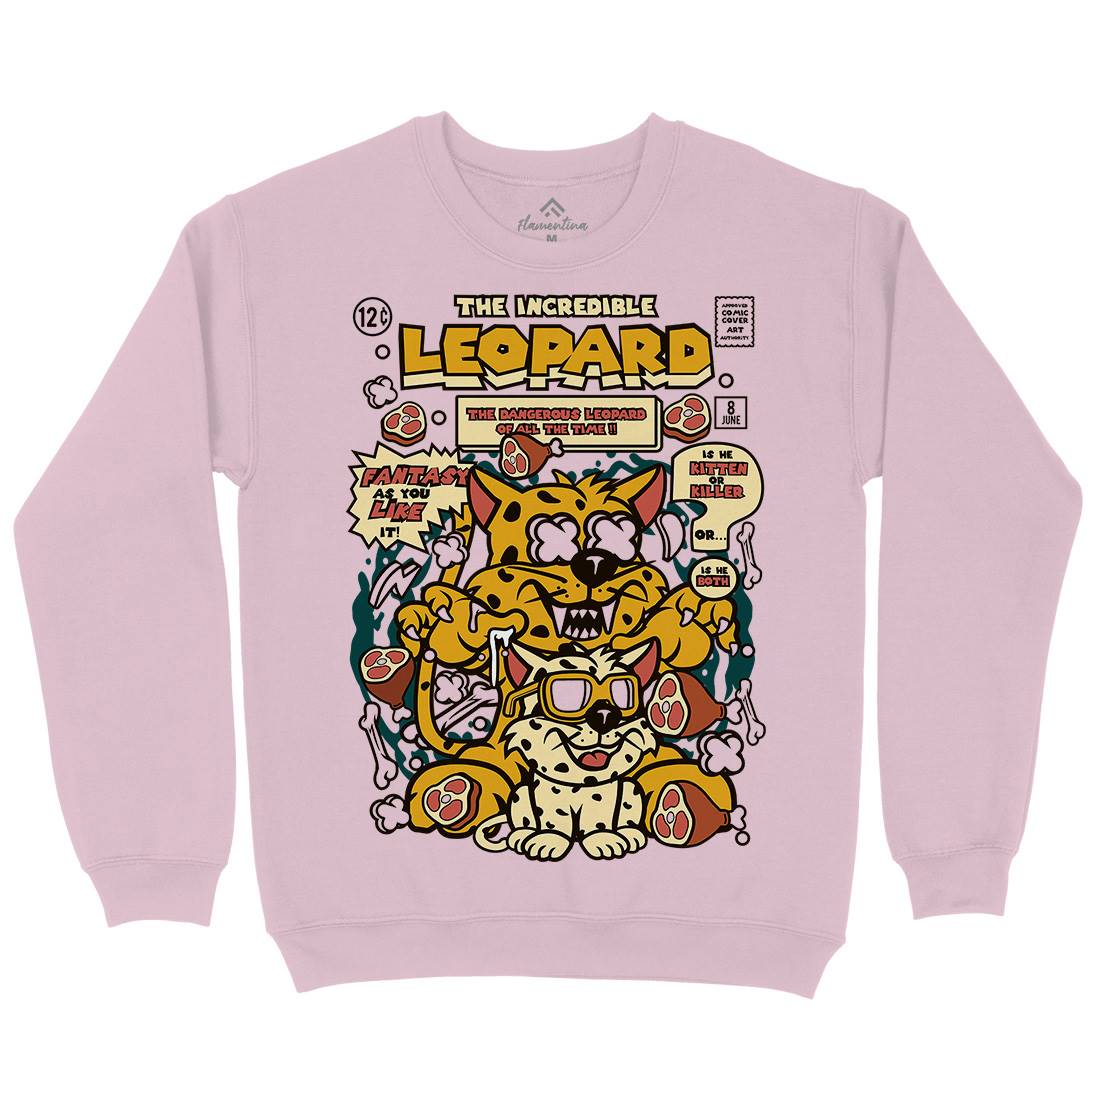 The Incredible Leopard Kids Crew Neck Sweatshirt Animals C677